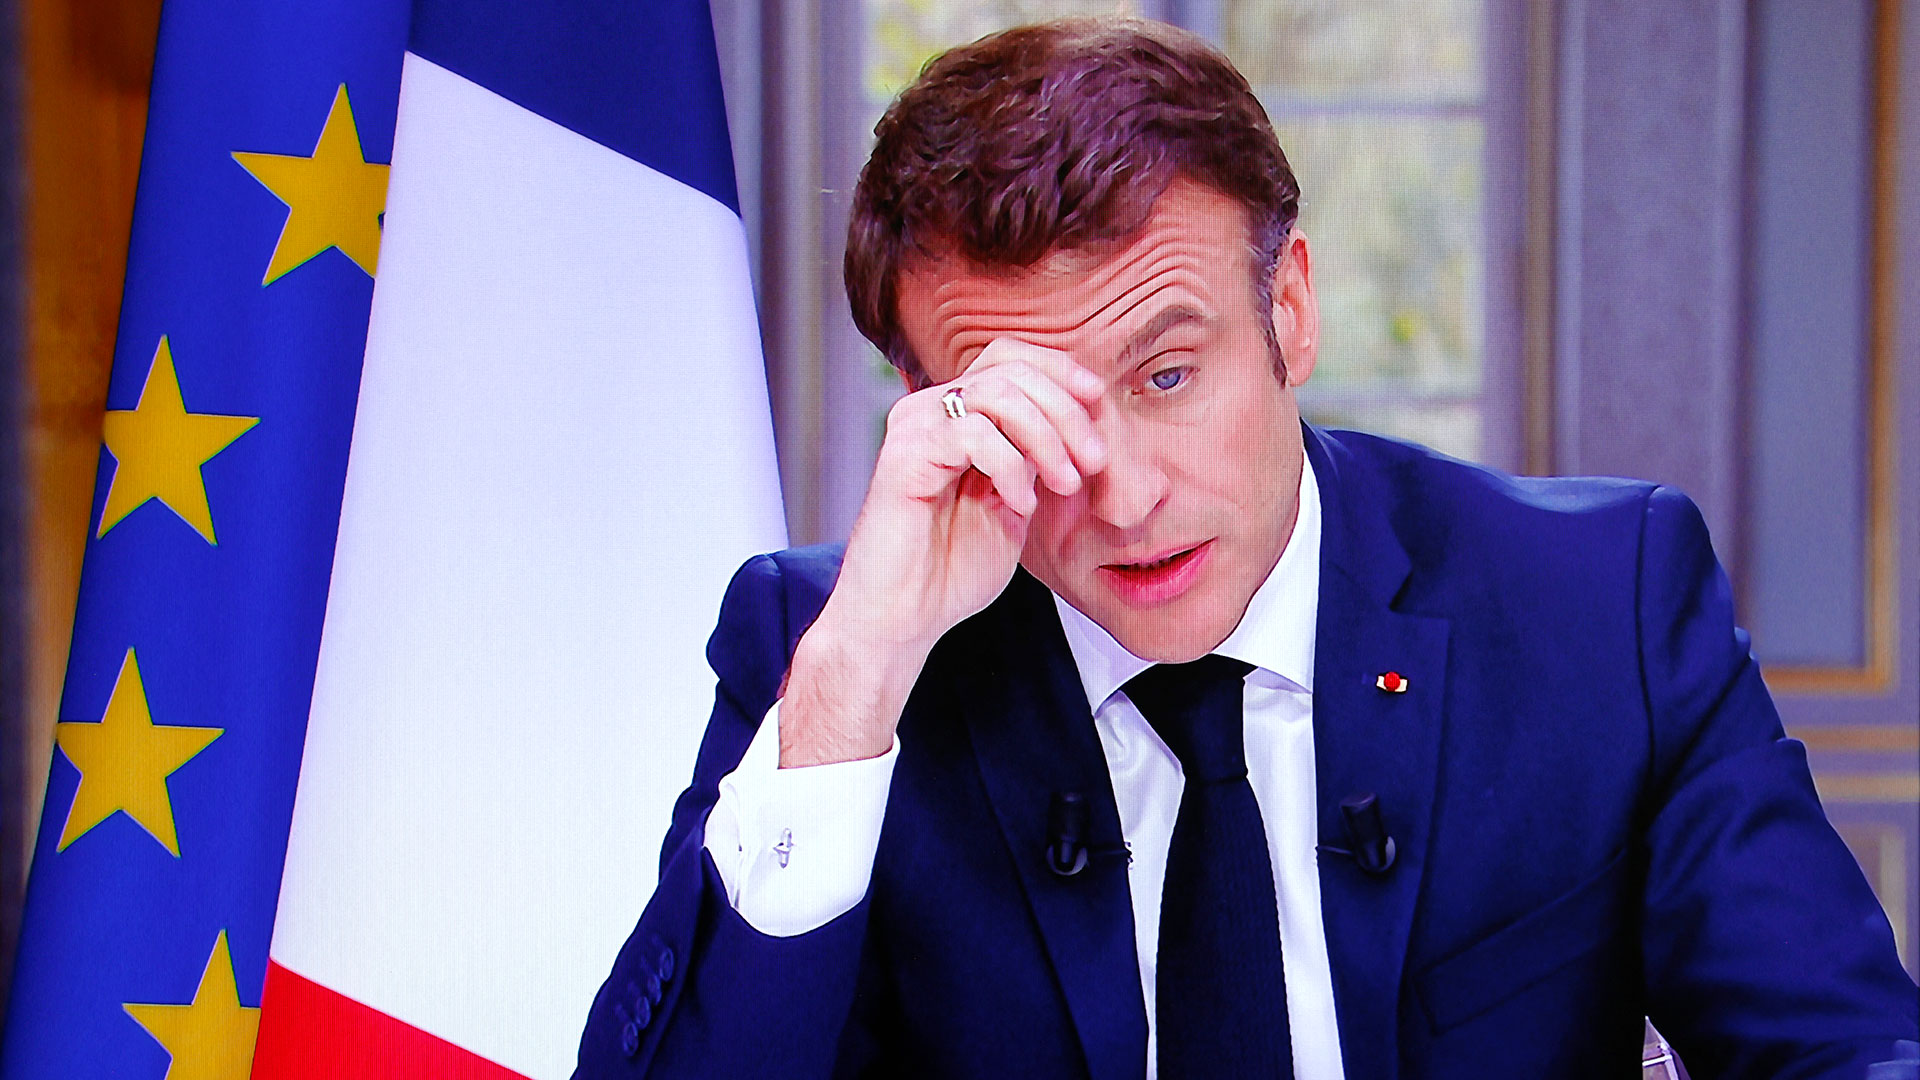 La ira crece en Francia y el riesgo de radicalización aumenta tras las palabras de Macron